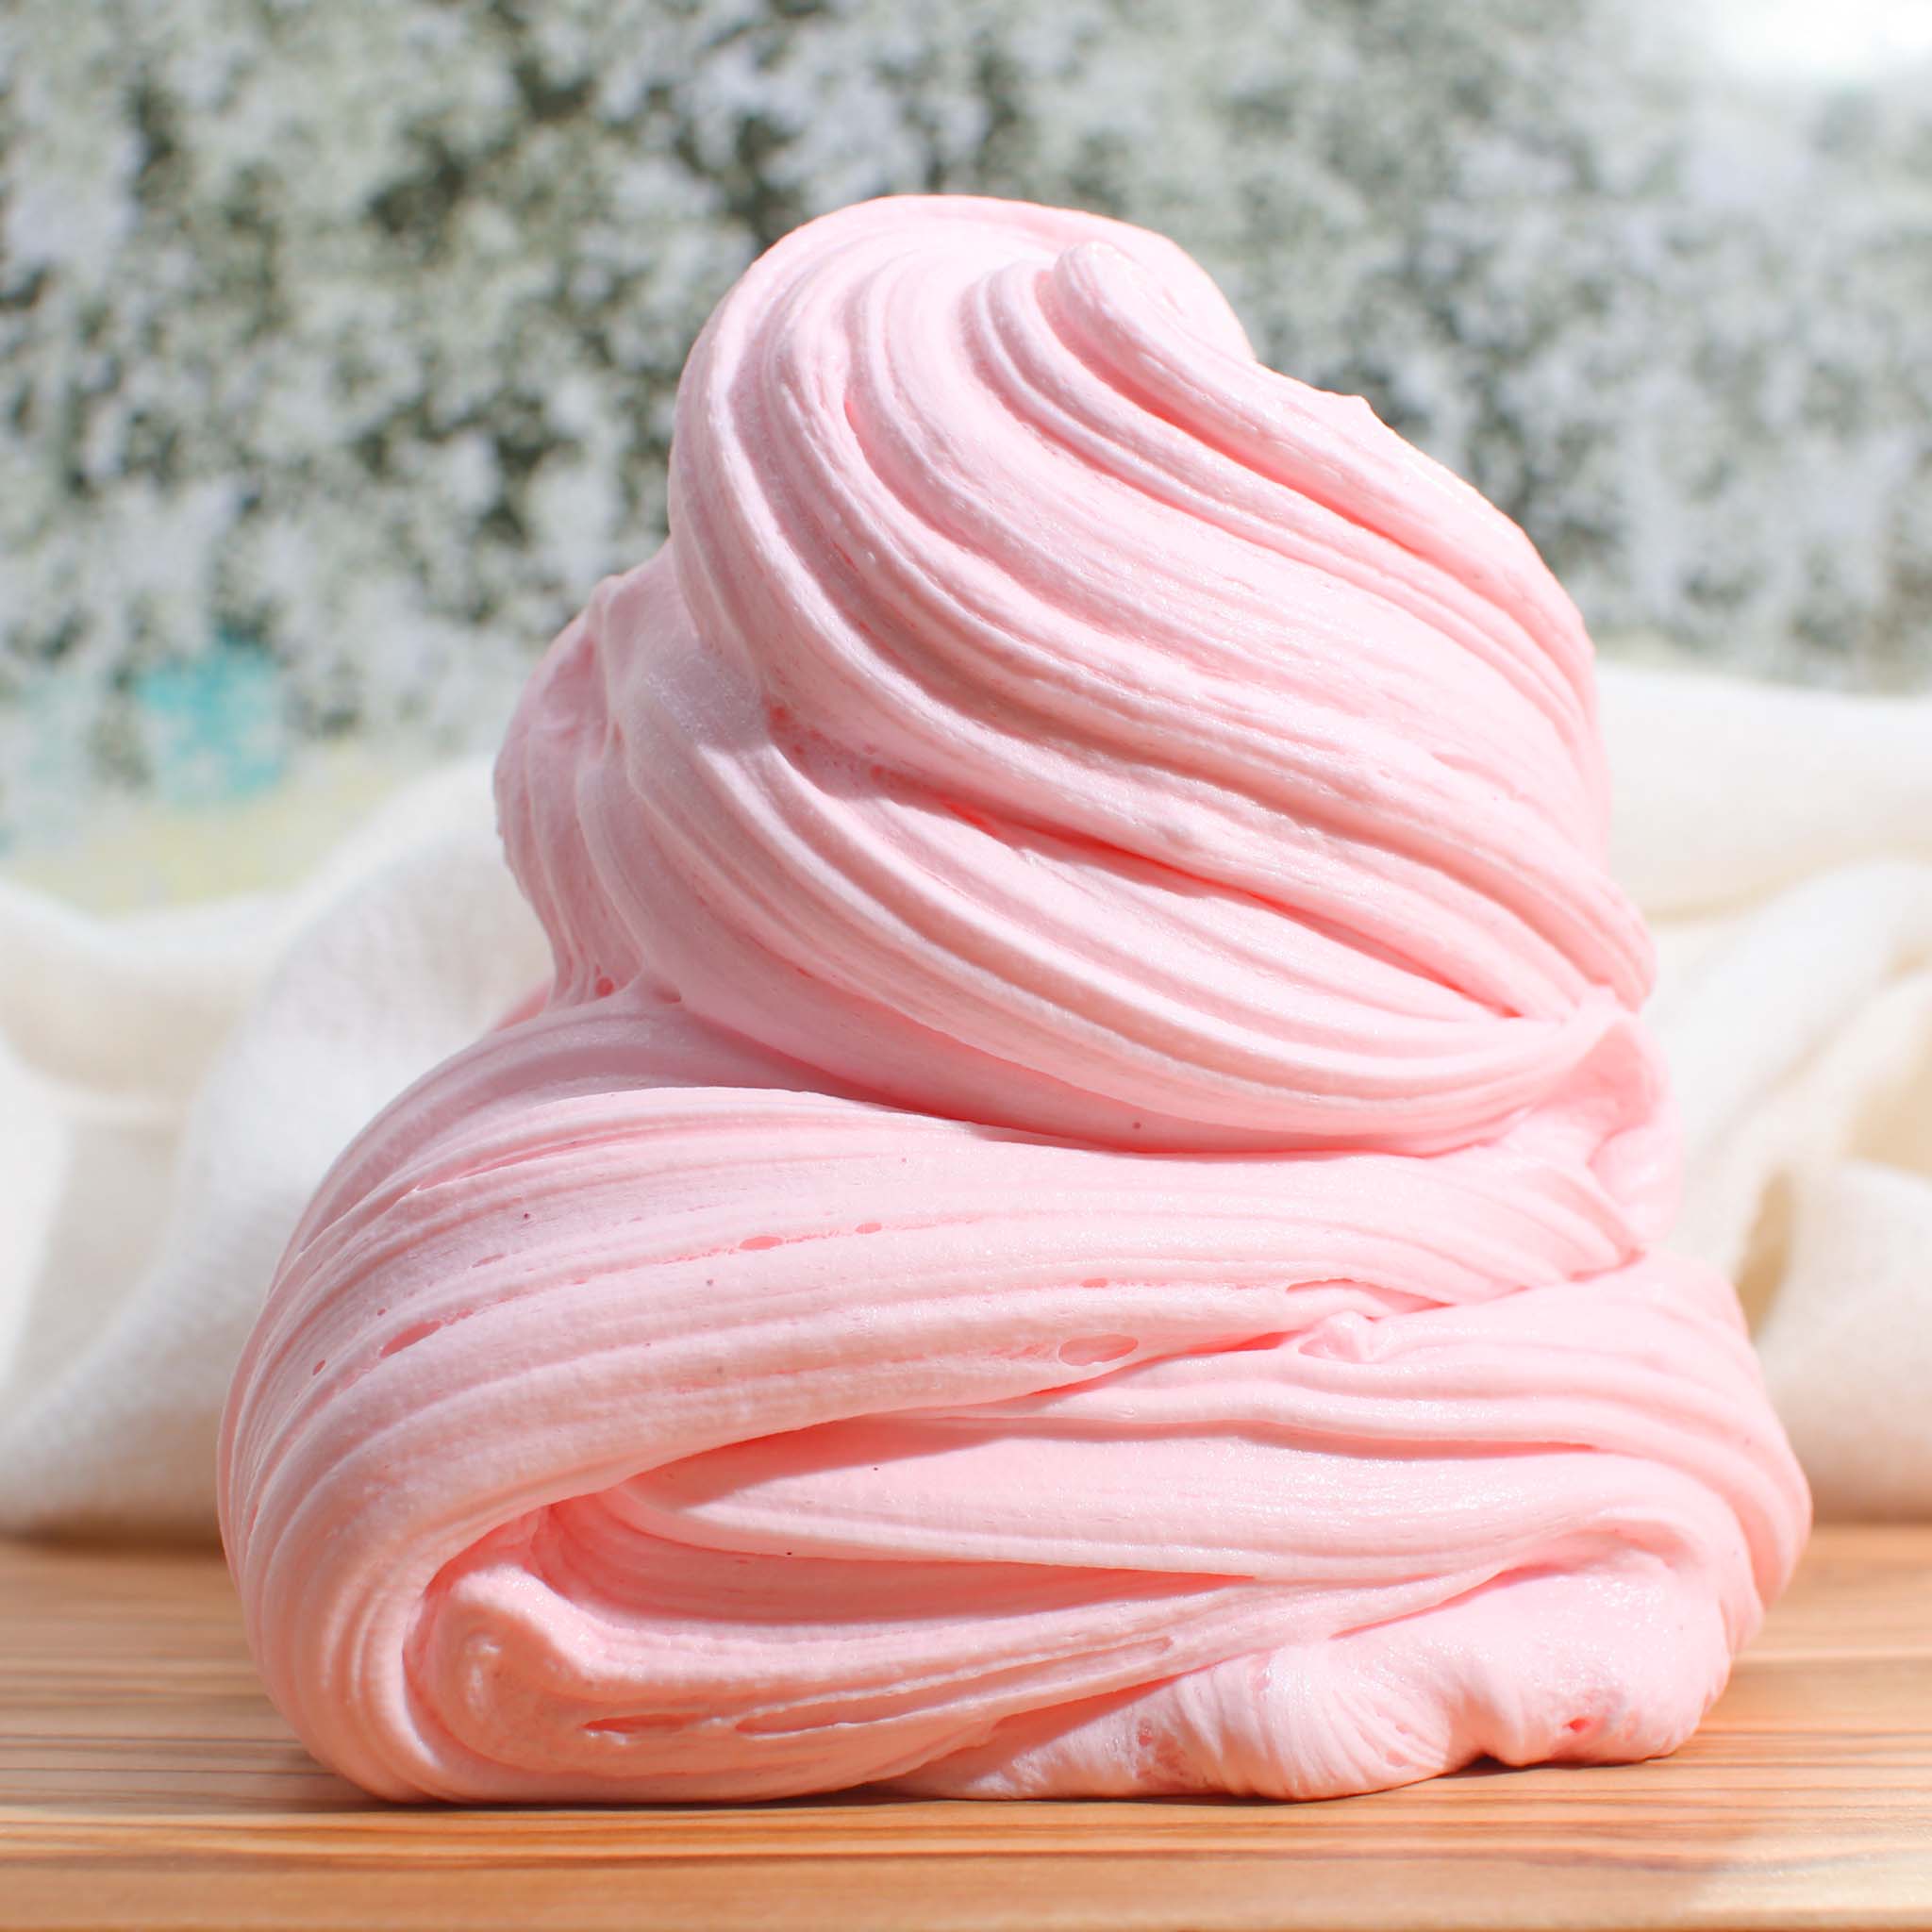 Chubby Piggy Ice Cream  DIY Clay Slime – Slime Fantasies